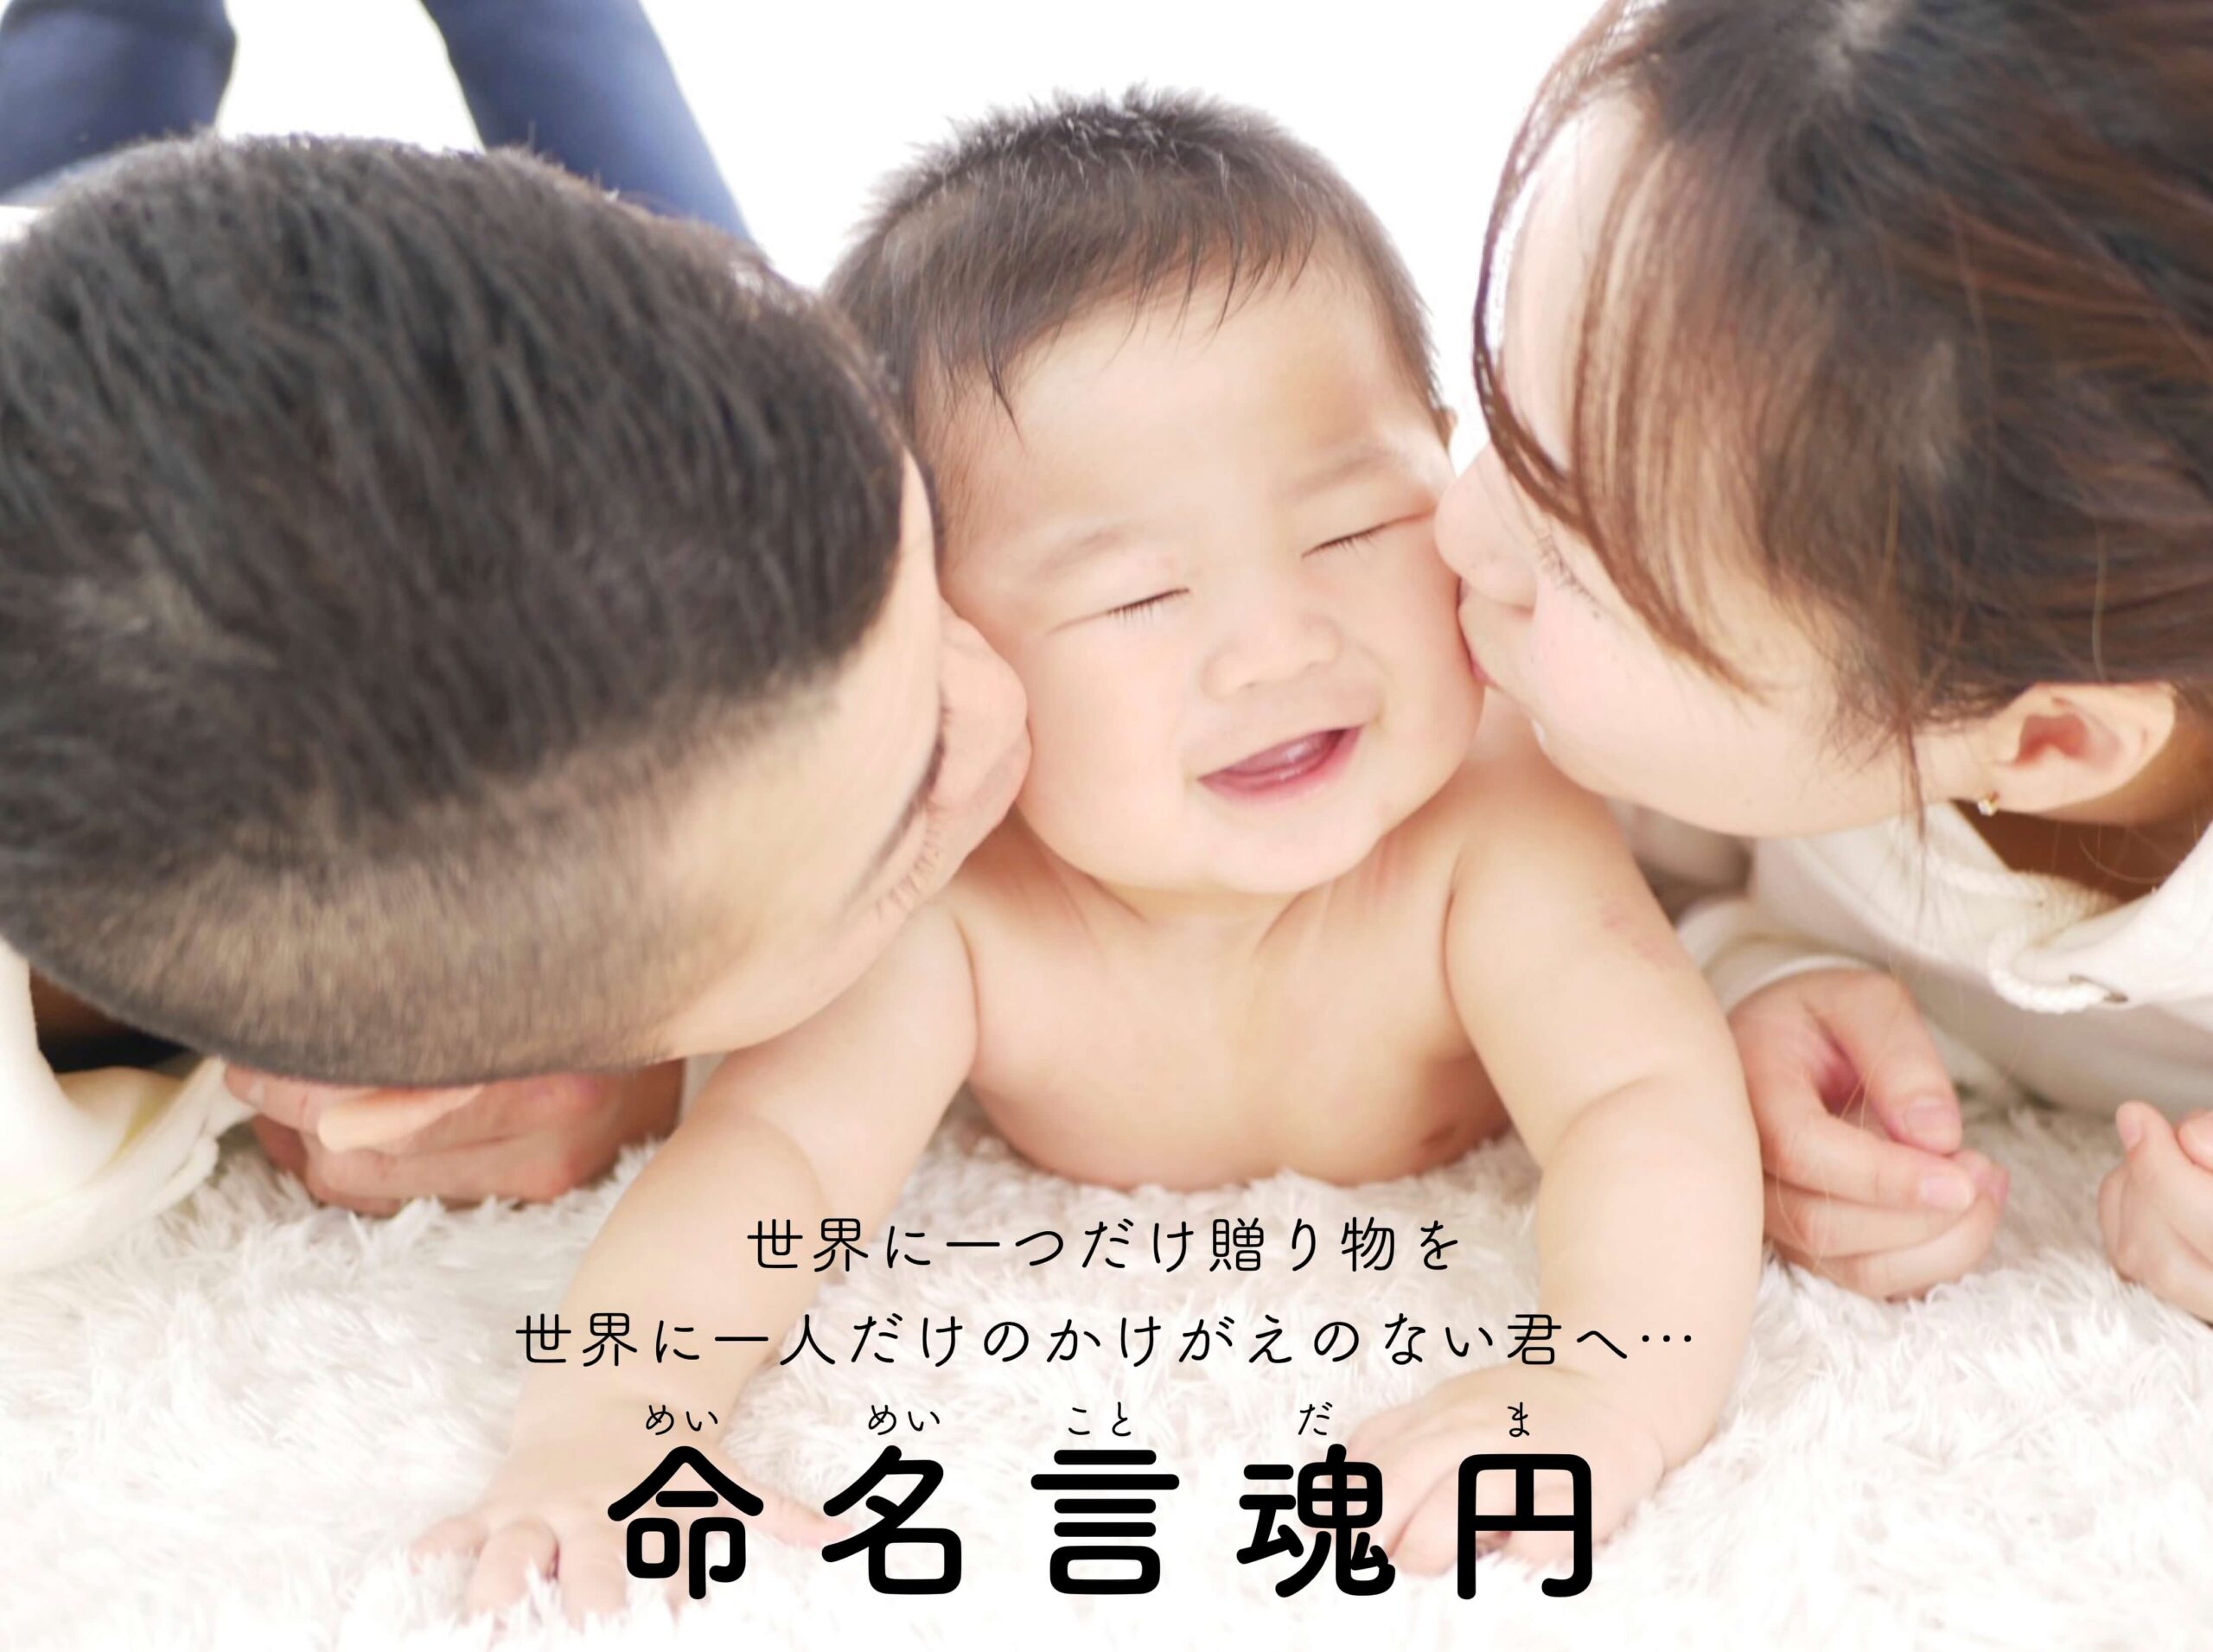 赤ちゃんの名前 咲 人 漢字の意味は さくと くんの命名書で解説 命名言魂円 めいめいことだま